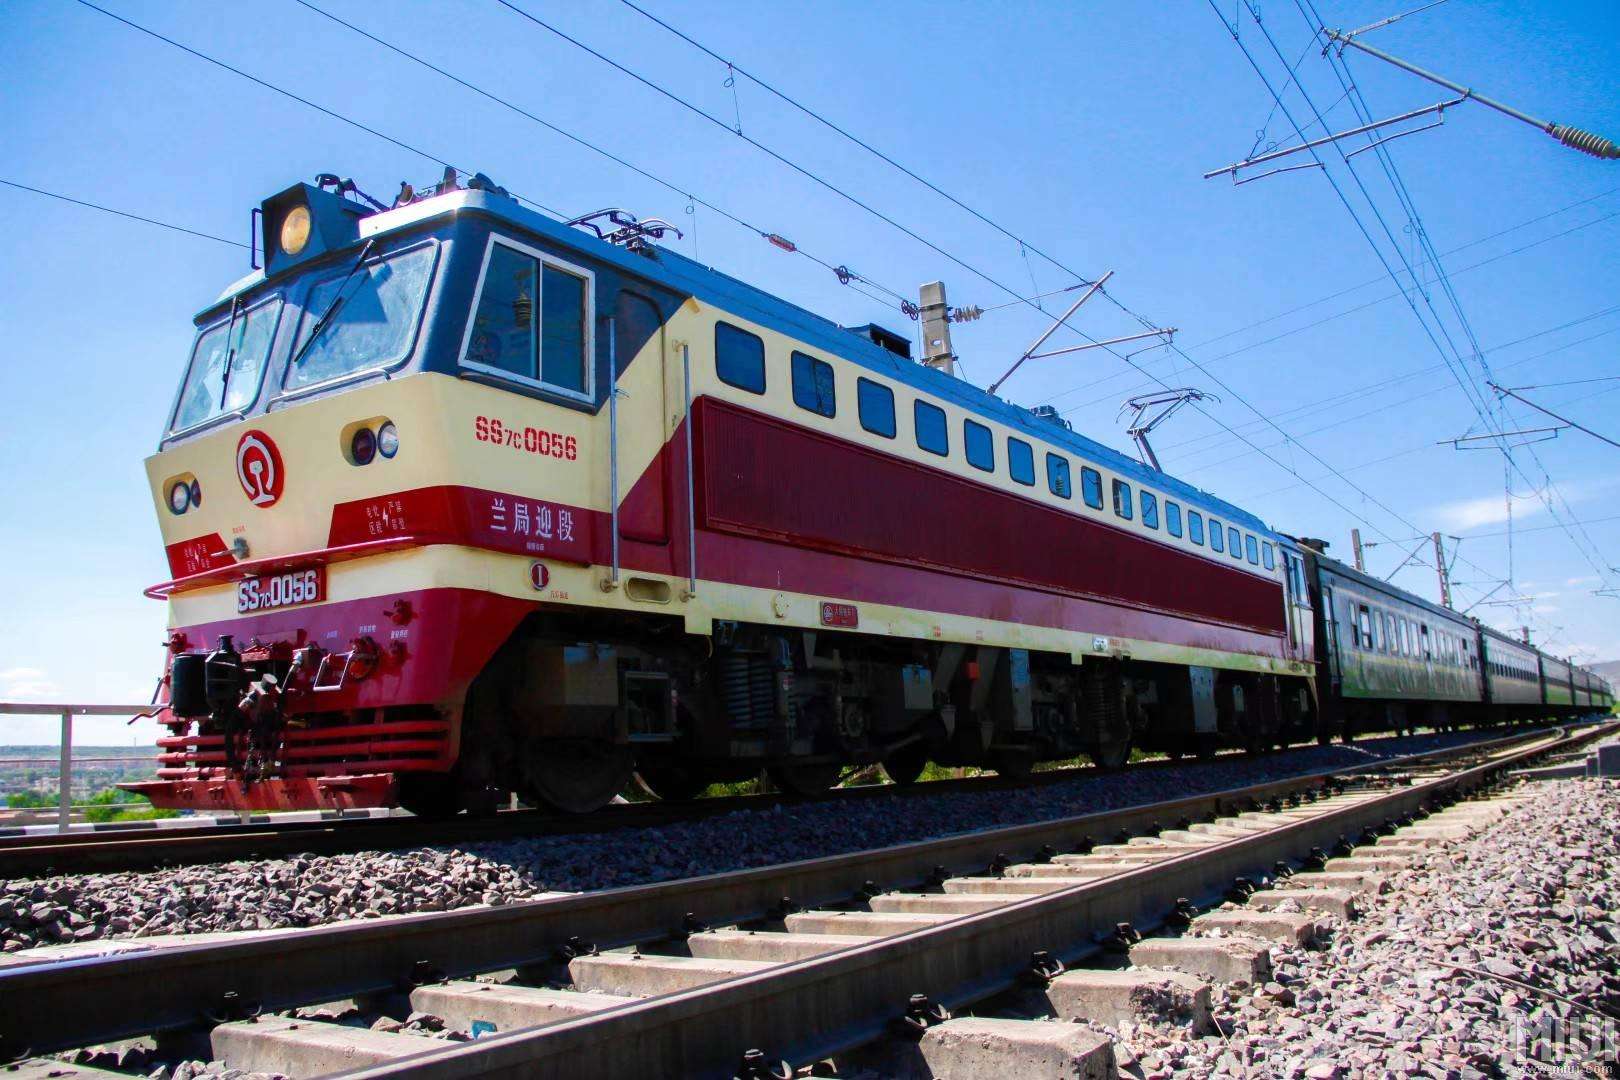 4月10日铁路调图 临沂火车站增开三对客车